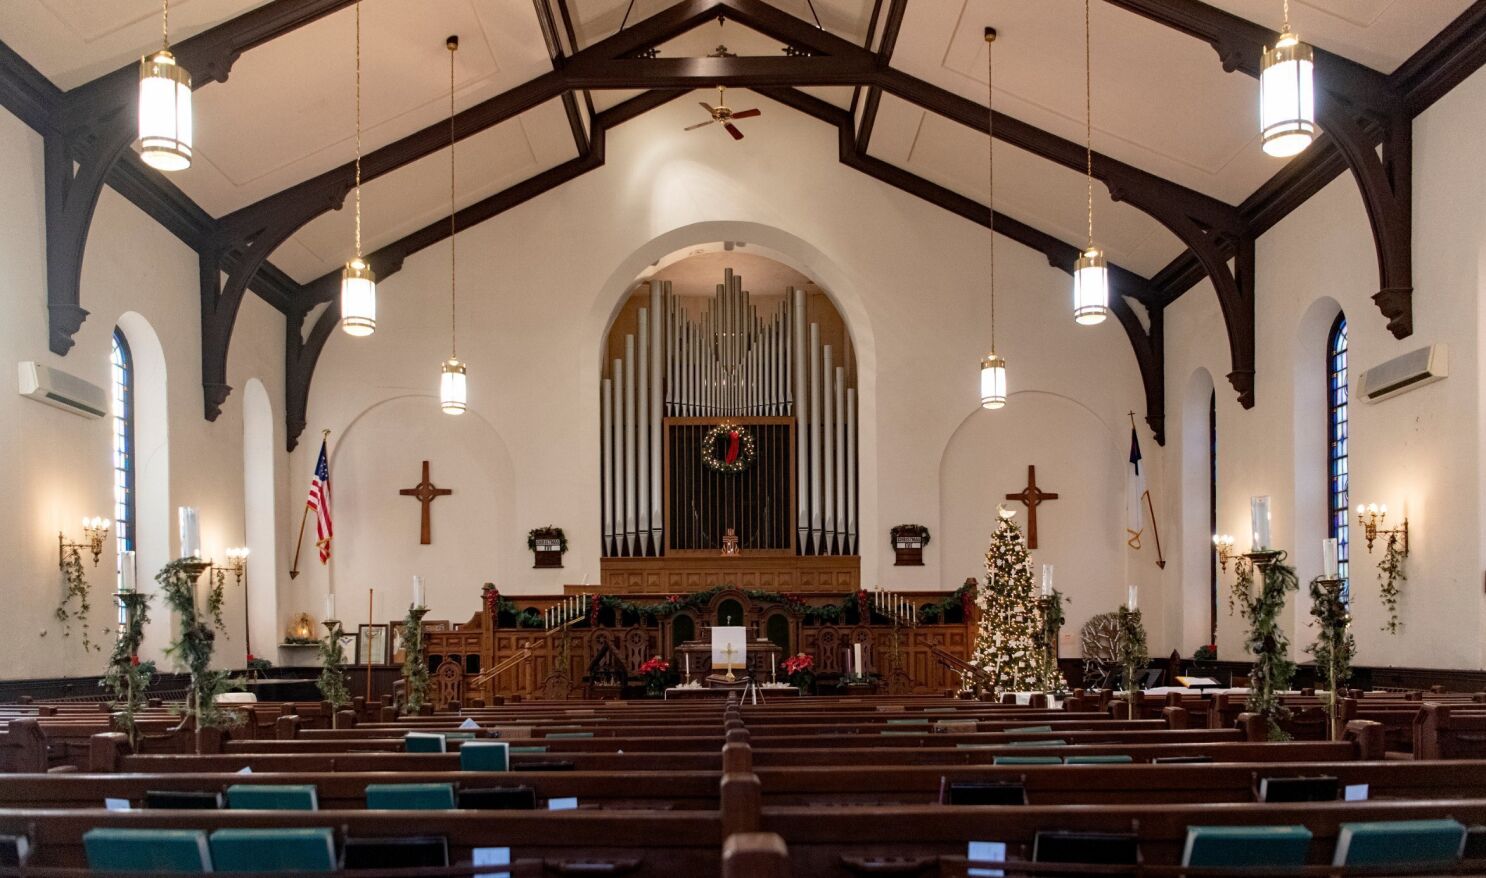 EEUU: Iglesia con 221 años de historia anuncia su cierre definitivo - Los  Angeles Times